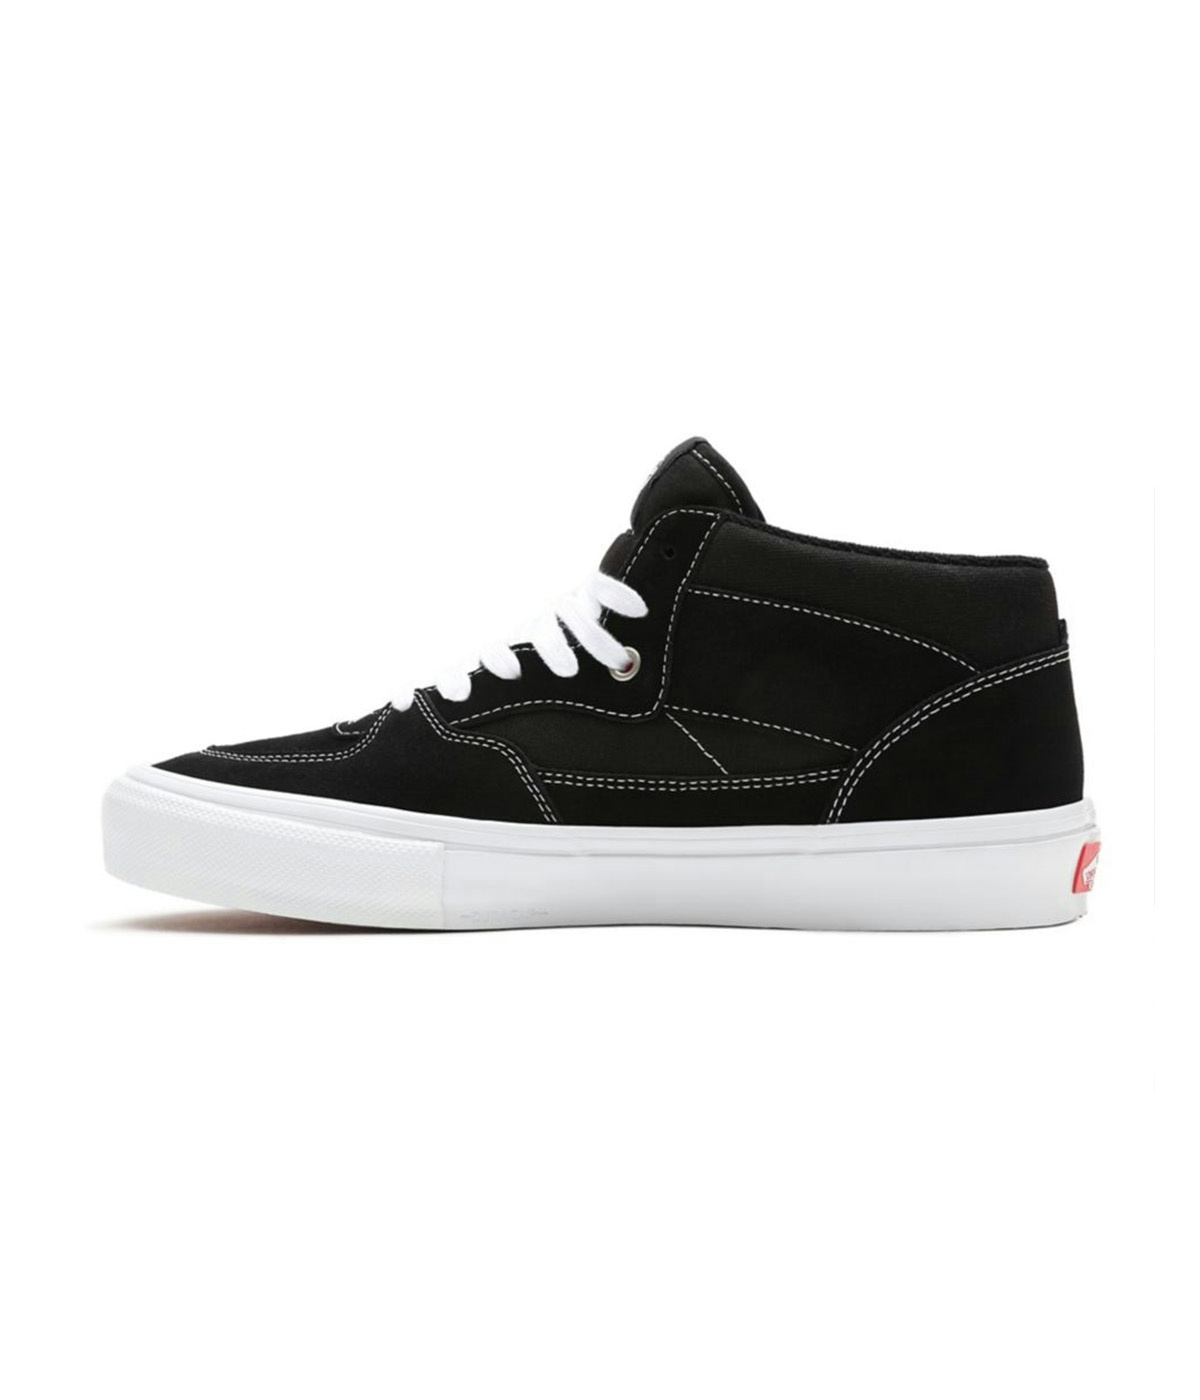 Vans Skate Half Cab Shoes - Skor Black/White 4